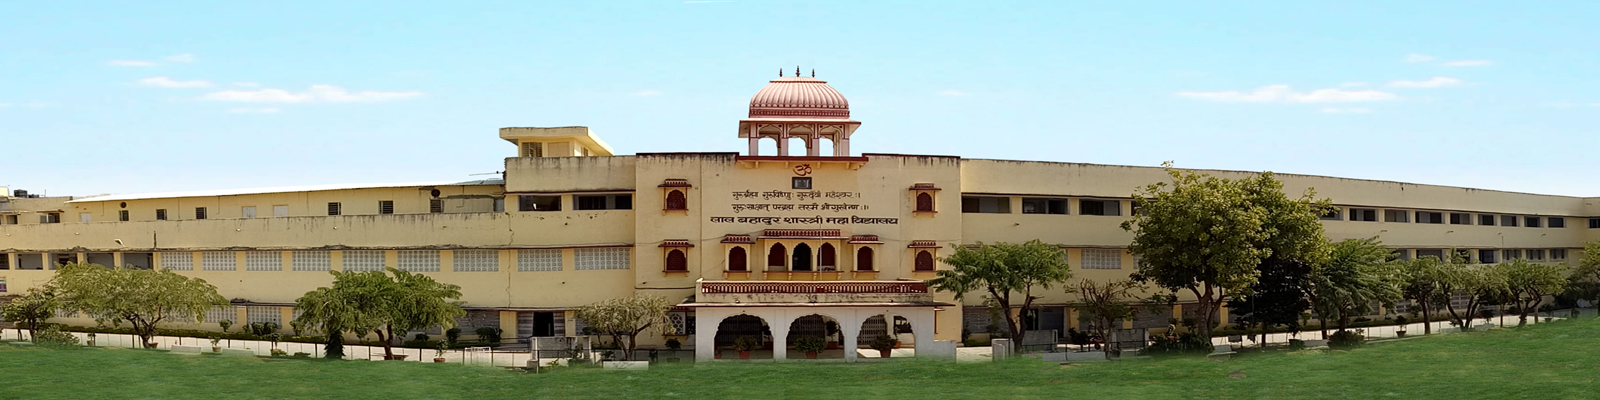 Lal Bahadur Shastri P.G. College, Jaipur Image